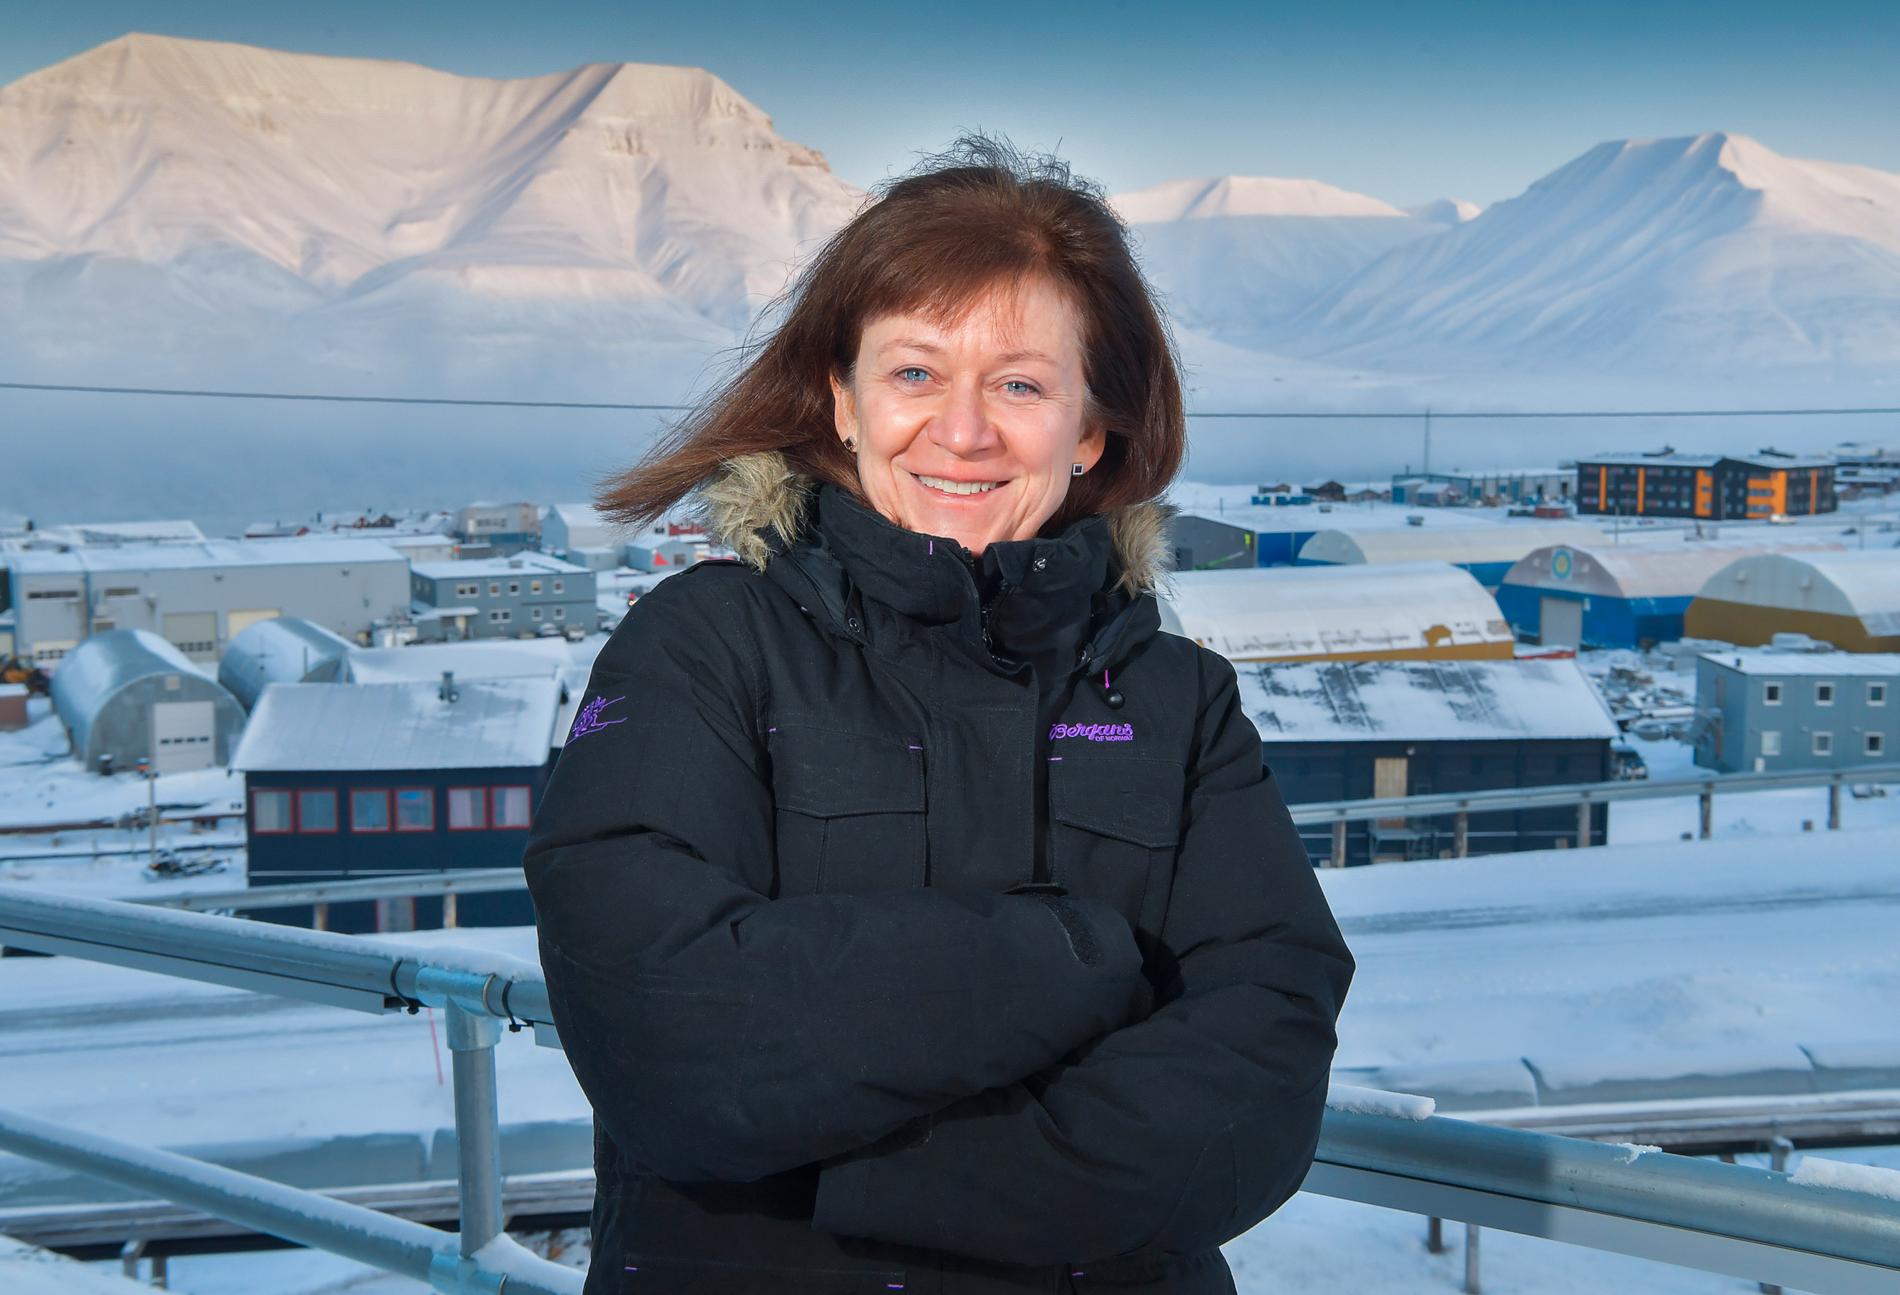 Sysselmannen Kjerstin Askholt är den norska regeringens högsta representant på Svalbard. Hon vill inte prata storpolitik, men tycker att relationen mellan Longyearbyen och Barentsburg är god.